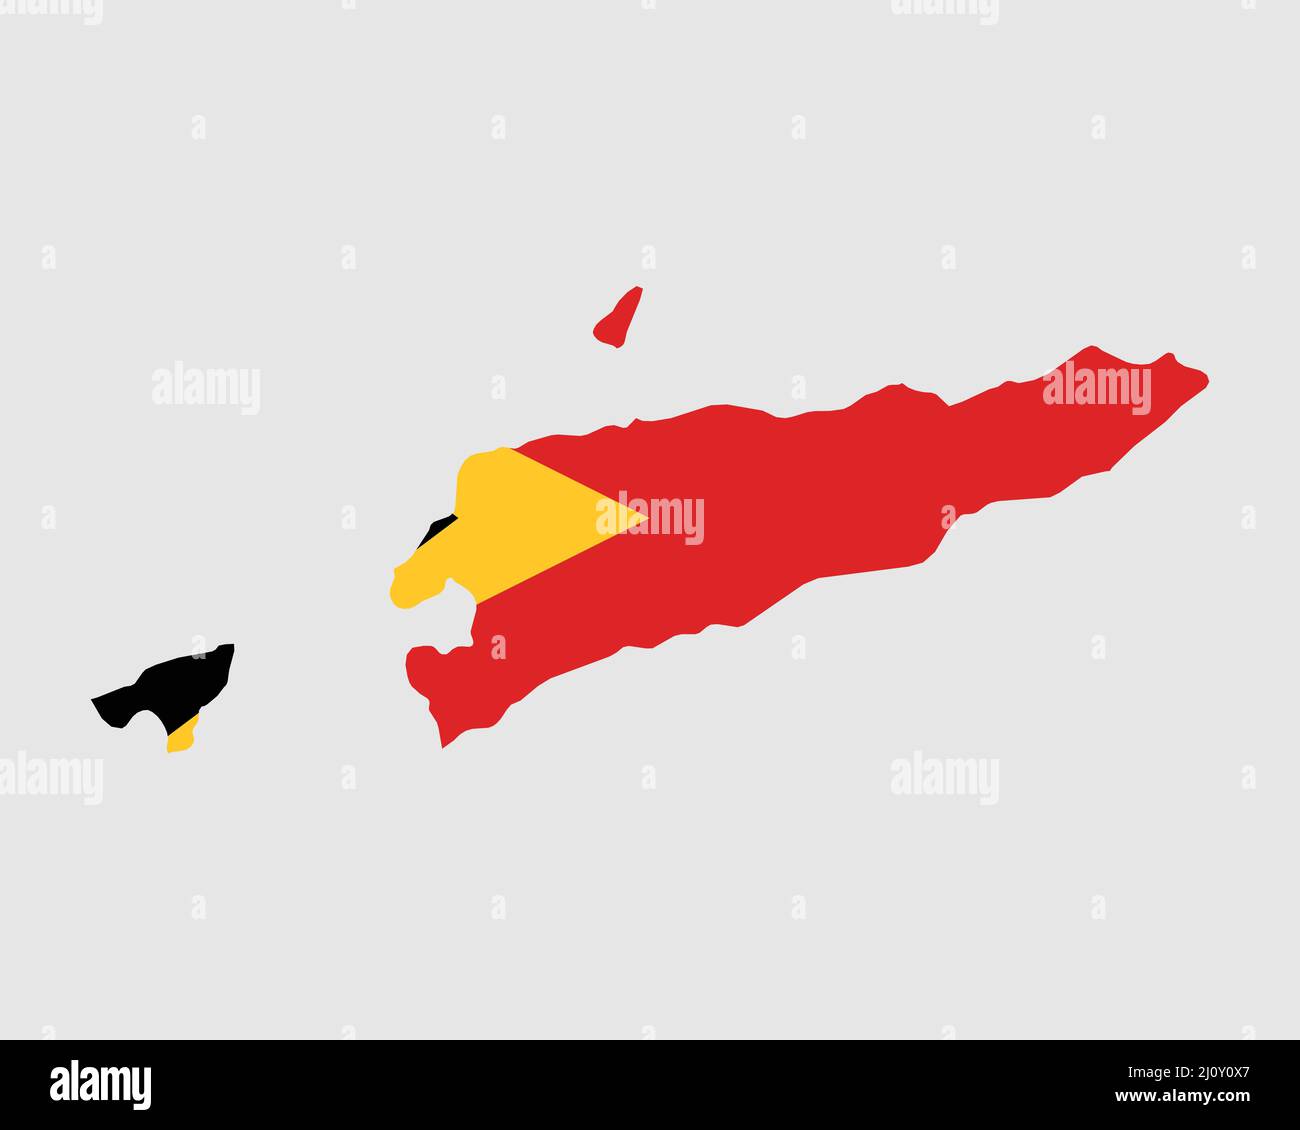 Osttimor Karte Flagge. Karte von Timor-Leste mit dem osttimoresischen Landesbanner. Vektorgrafik. Stock Vektor